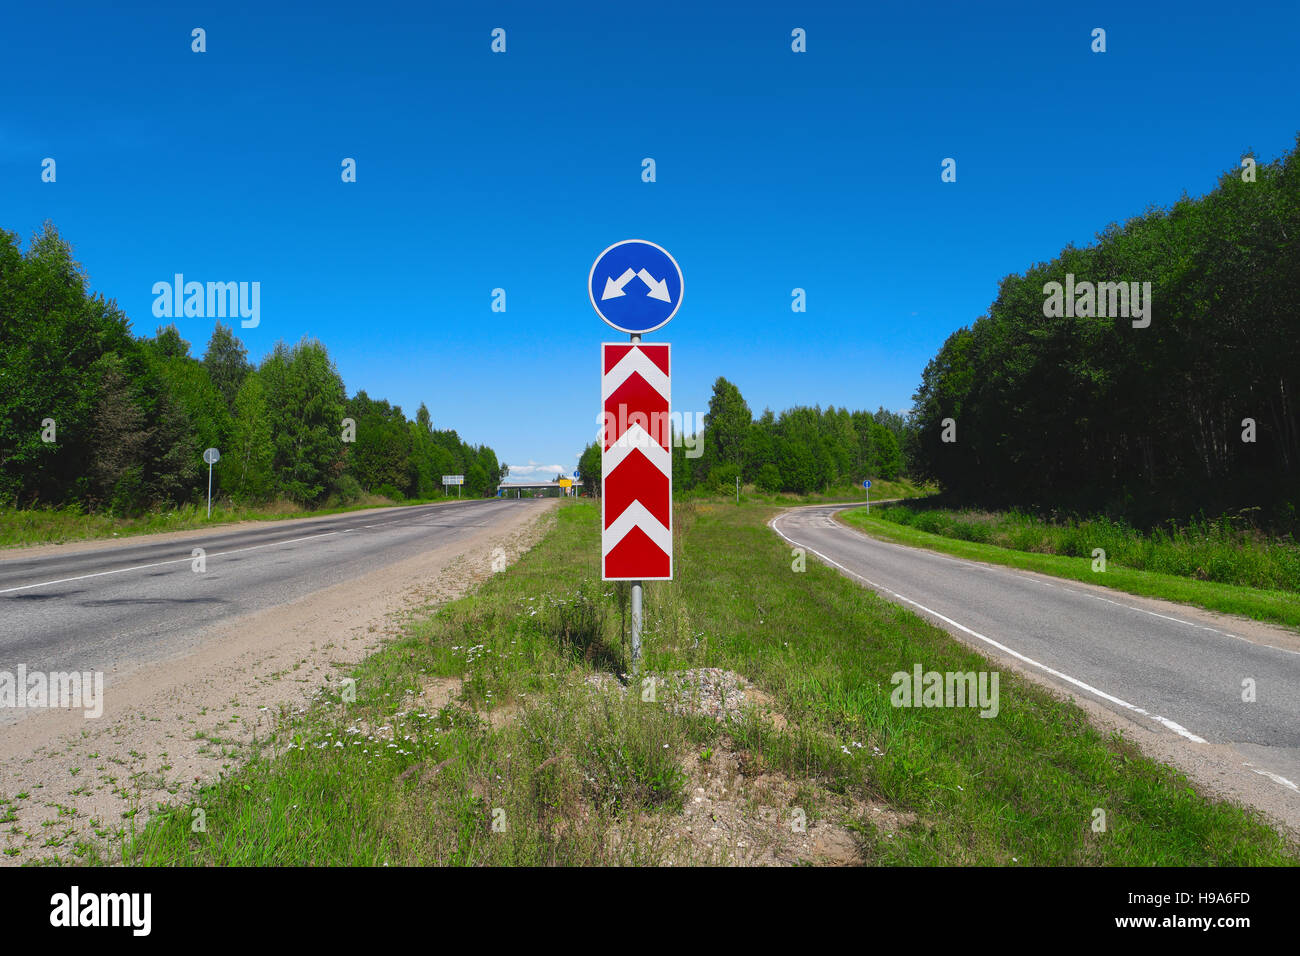 Panneau routier avec des flèches. Deux directions différentes. Concept de choisir la bonne voie. Trafic directionnel gauche et droite panneau Banque D'Images